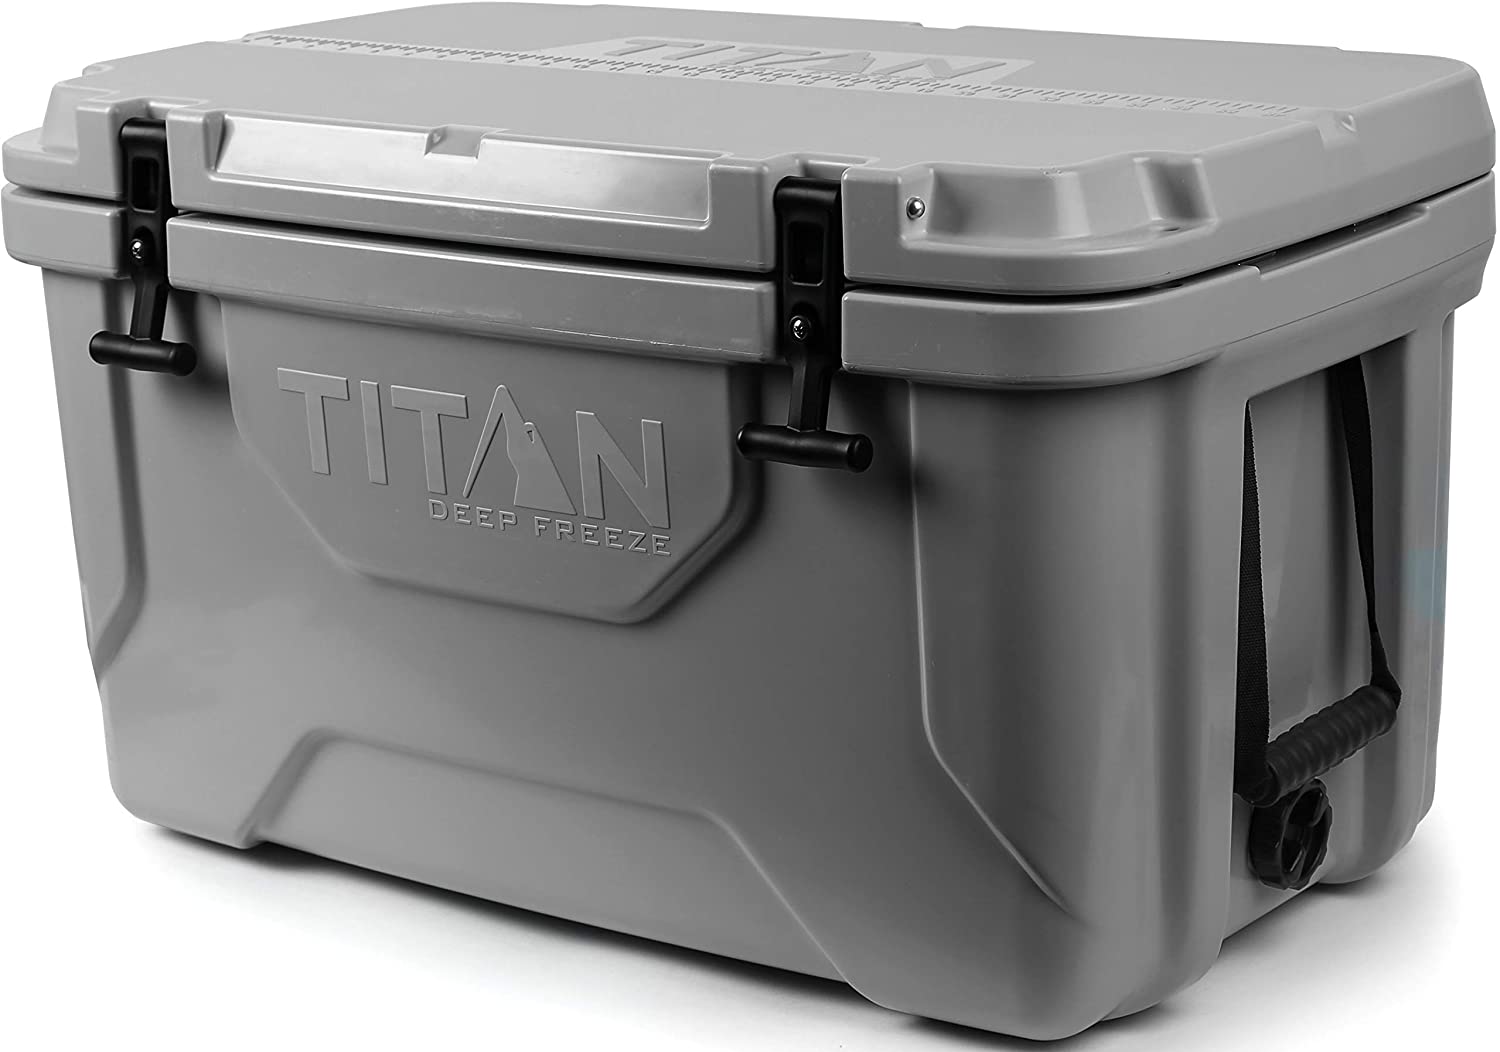 Titan-deep-freeze-camping-cooler